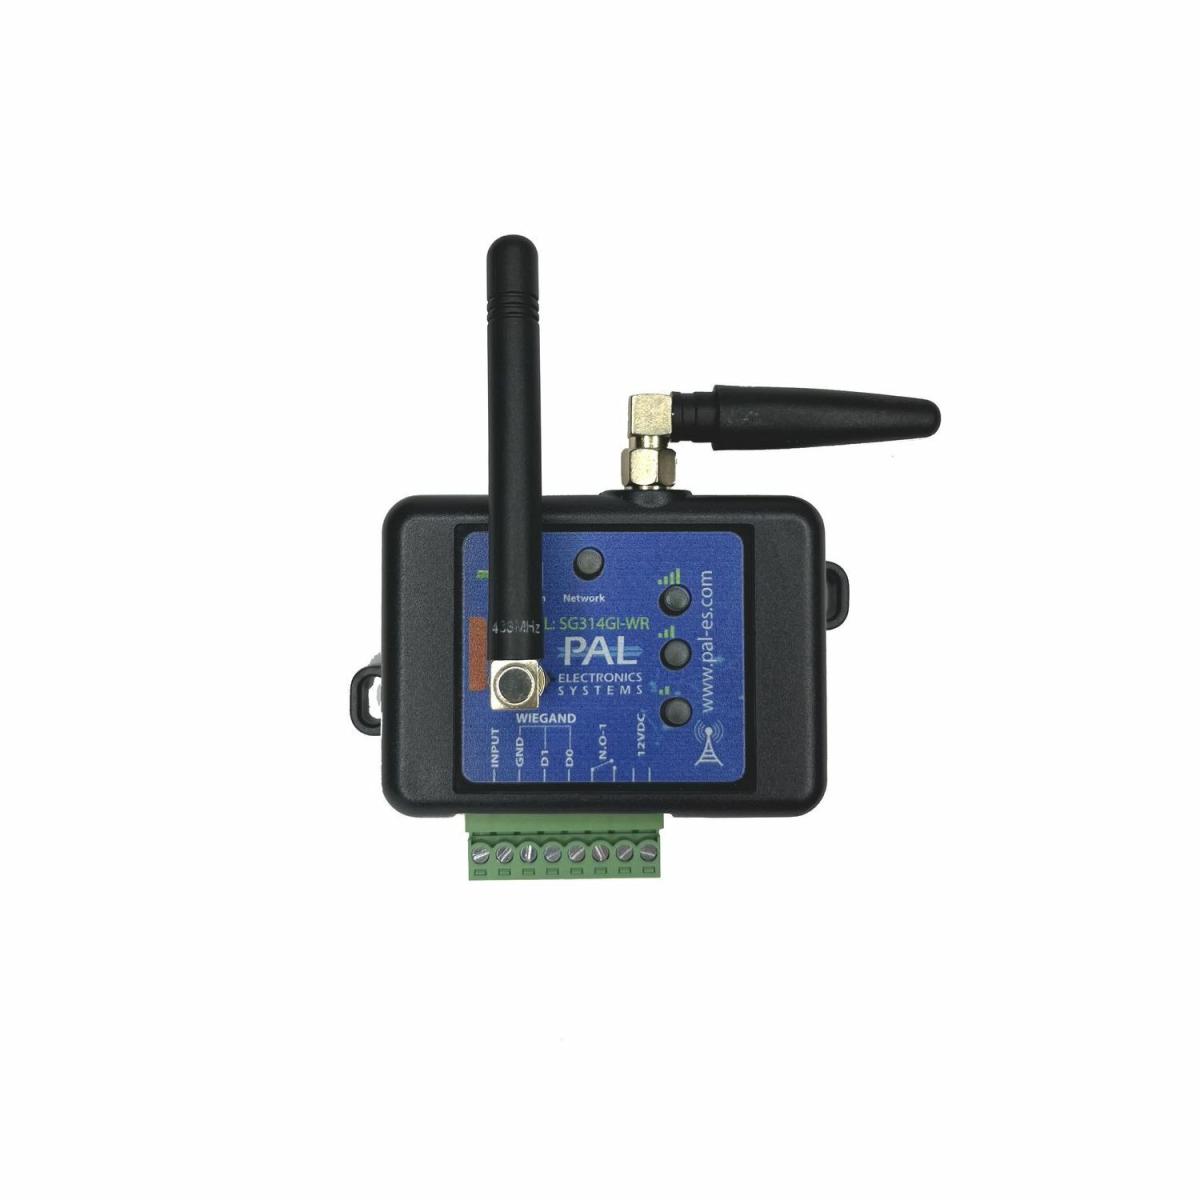 Pal-es SG314GI-WR (WIEGAND) GSM-контроллер